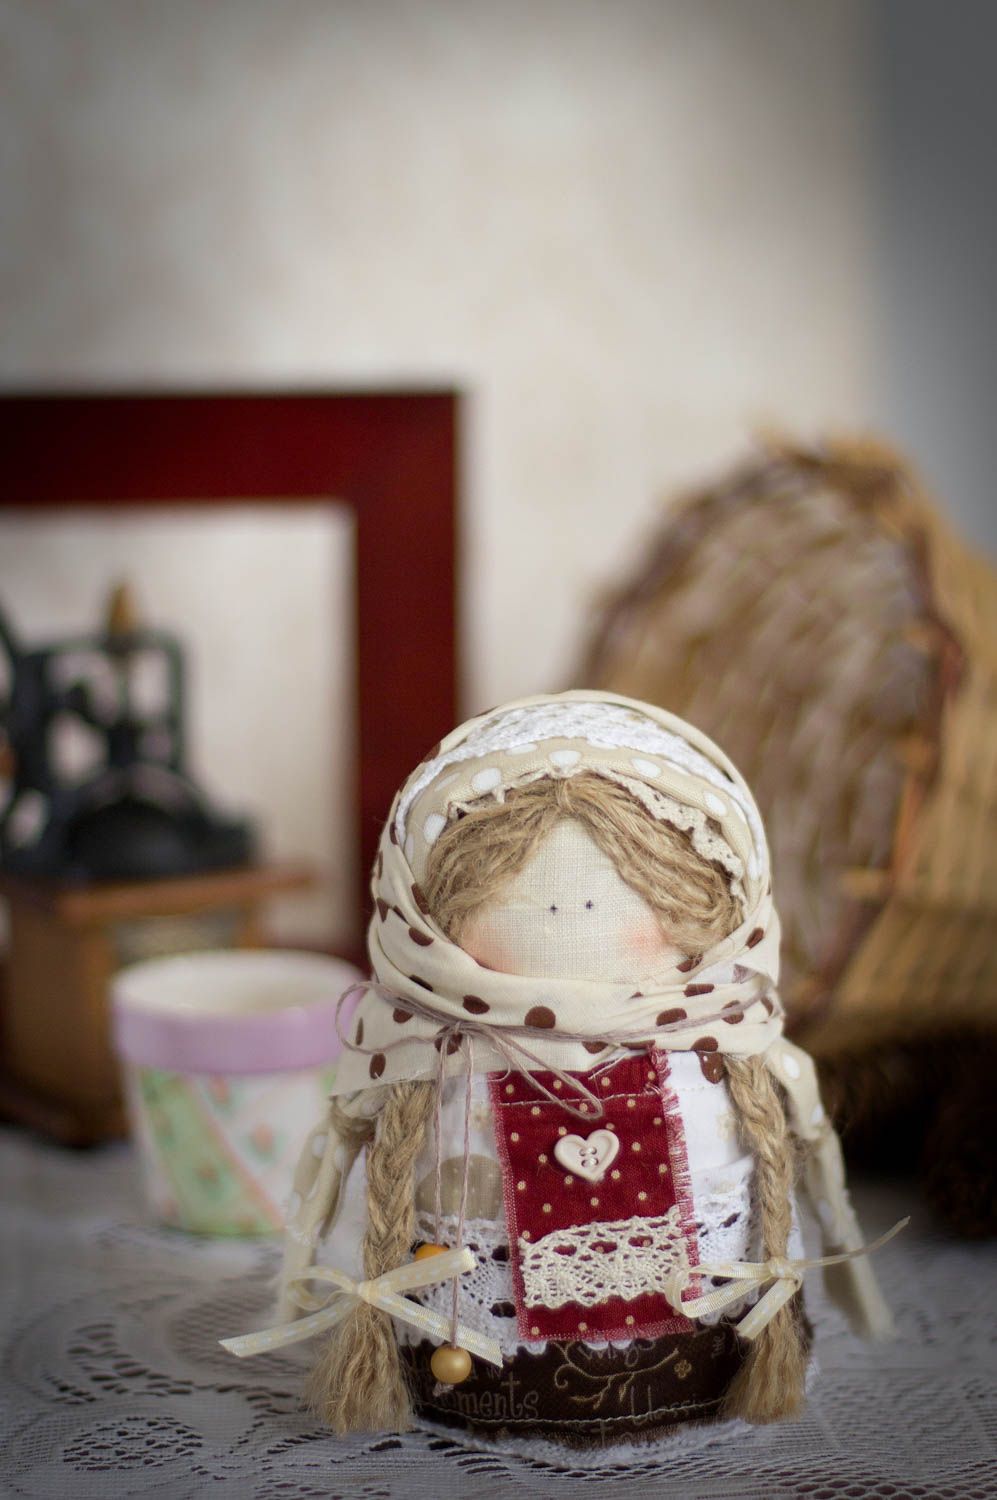 Кукла оберег крупеничка ручной работы из натуральной ткани красивая с крупой фото 1